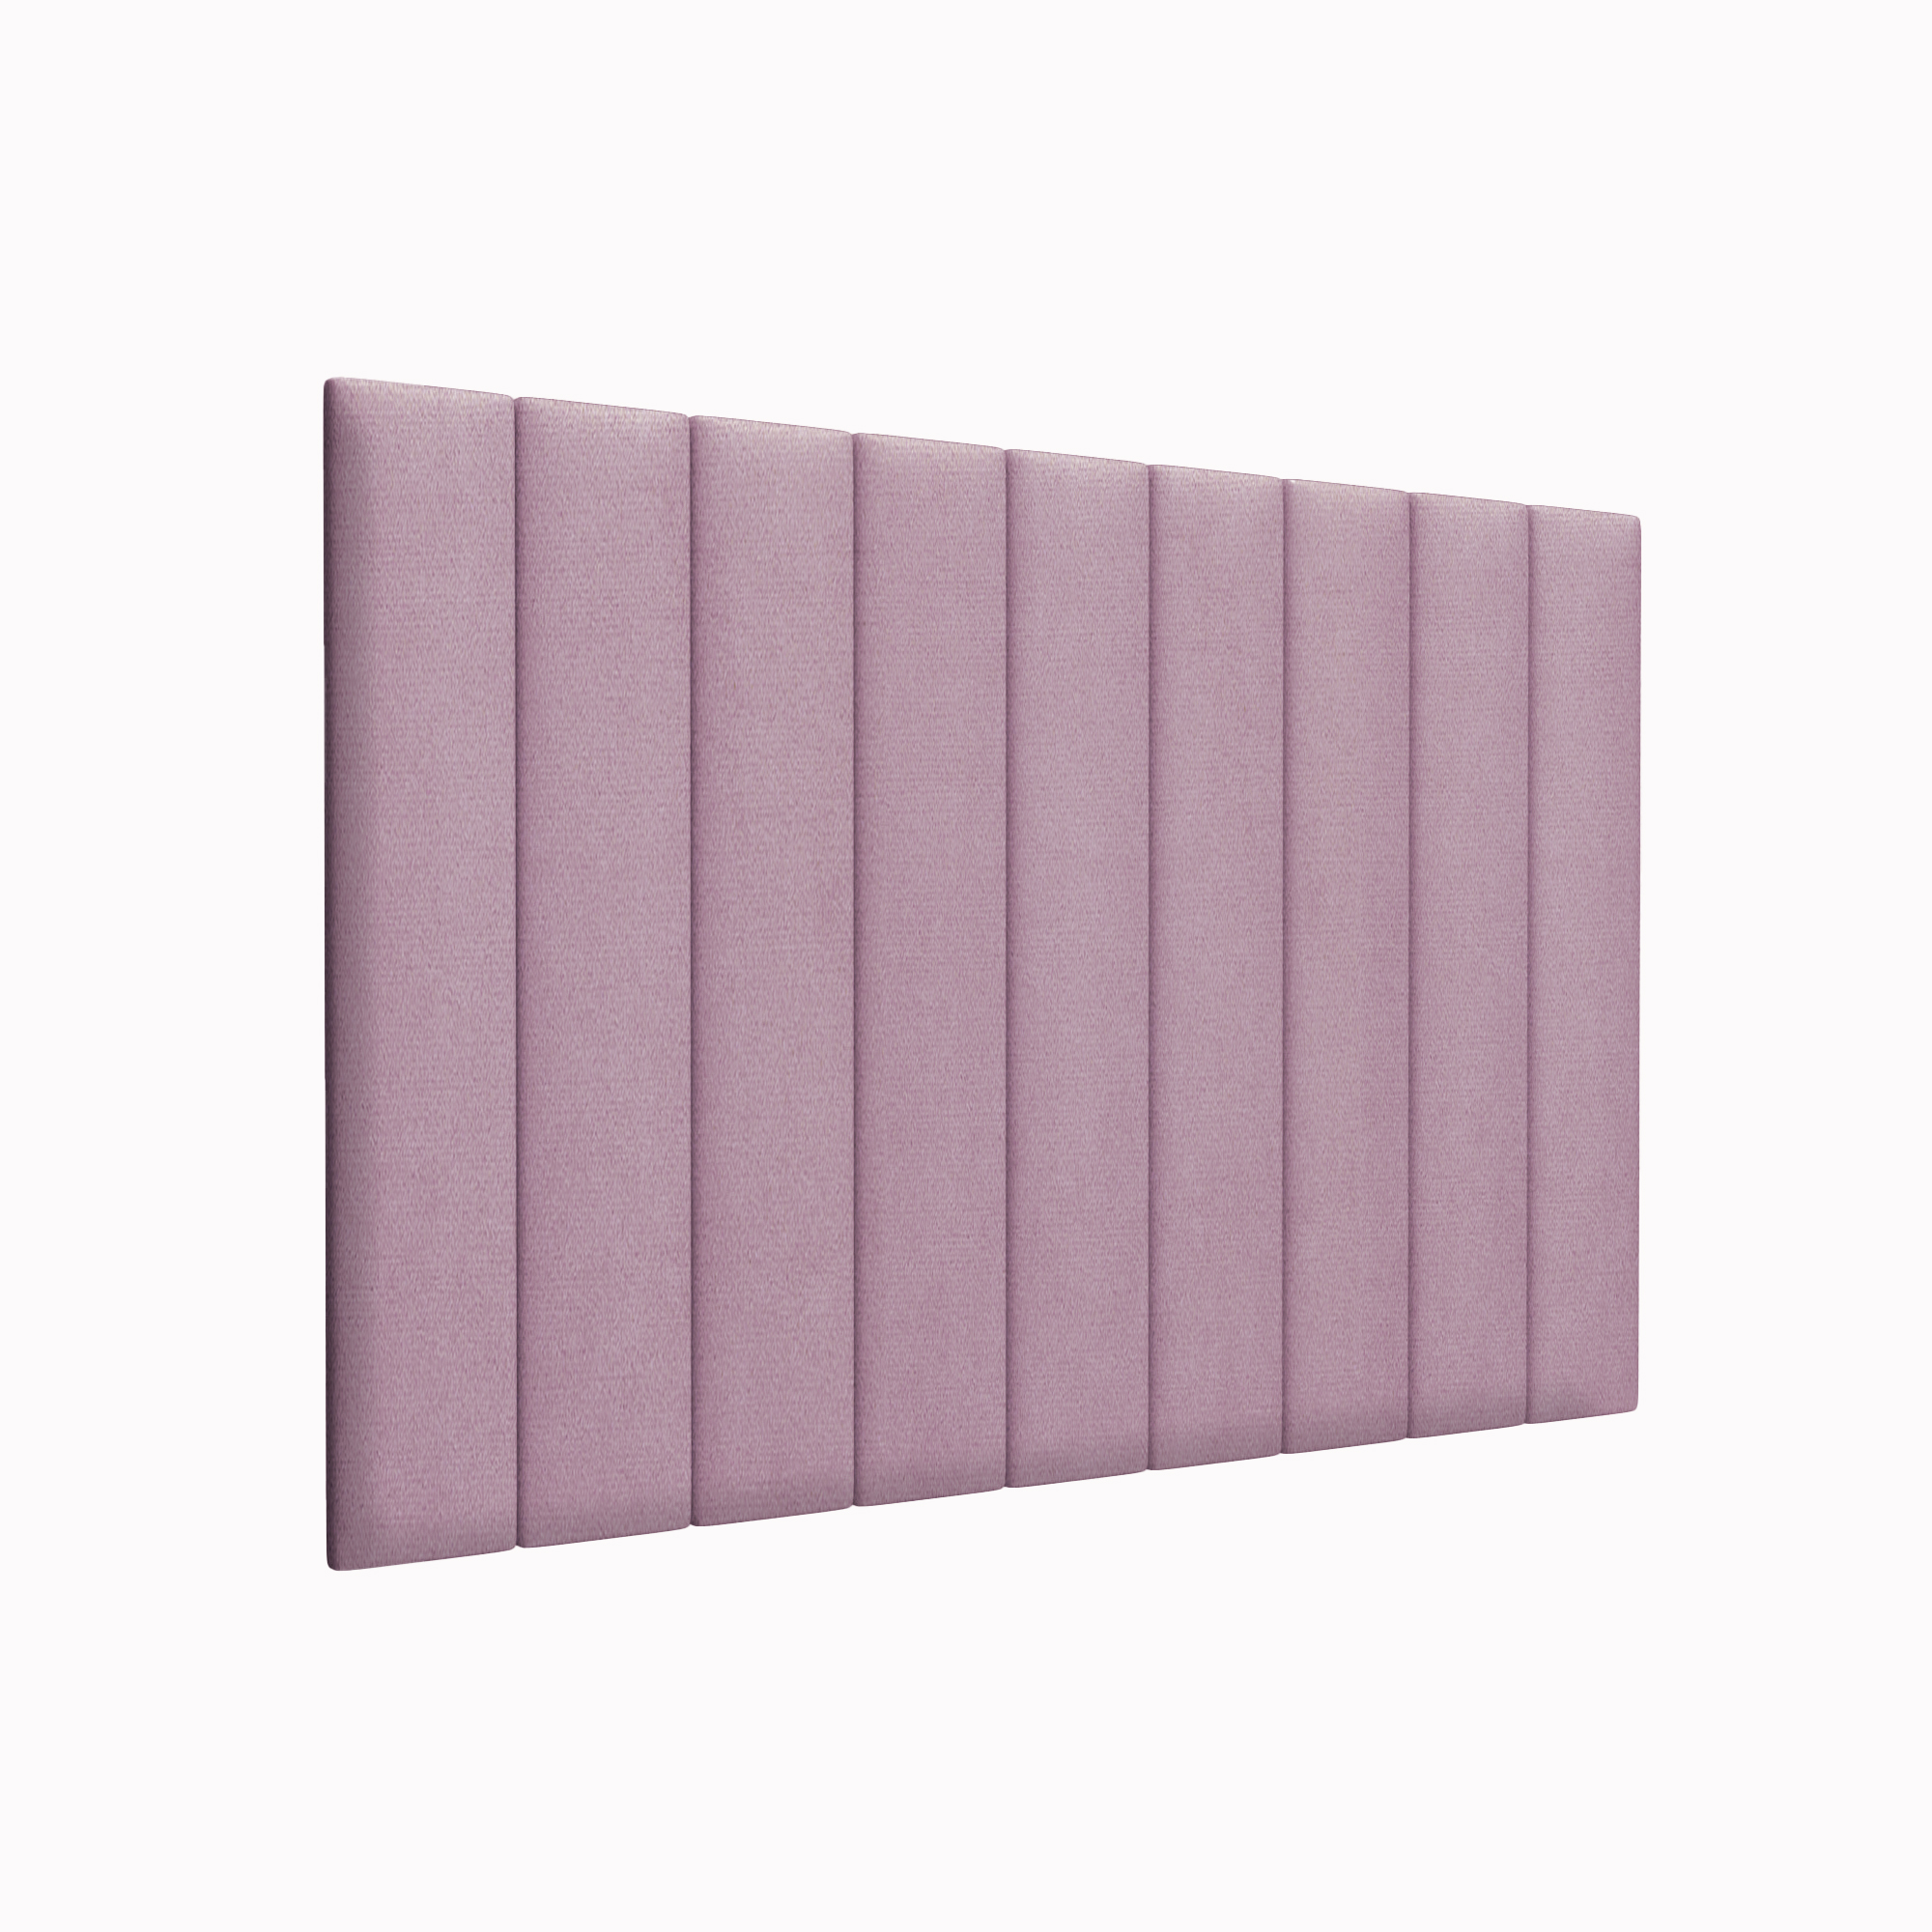 Мягкие стены детской Velour Pink 15х90 см 4 шт.